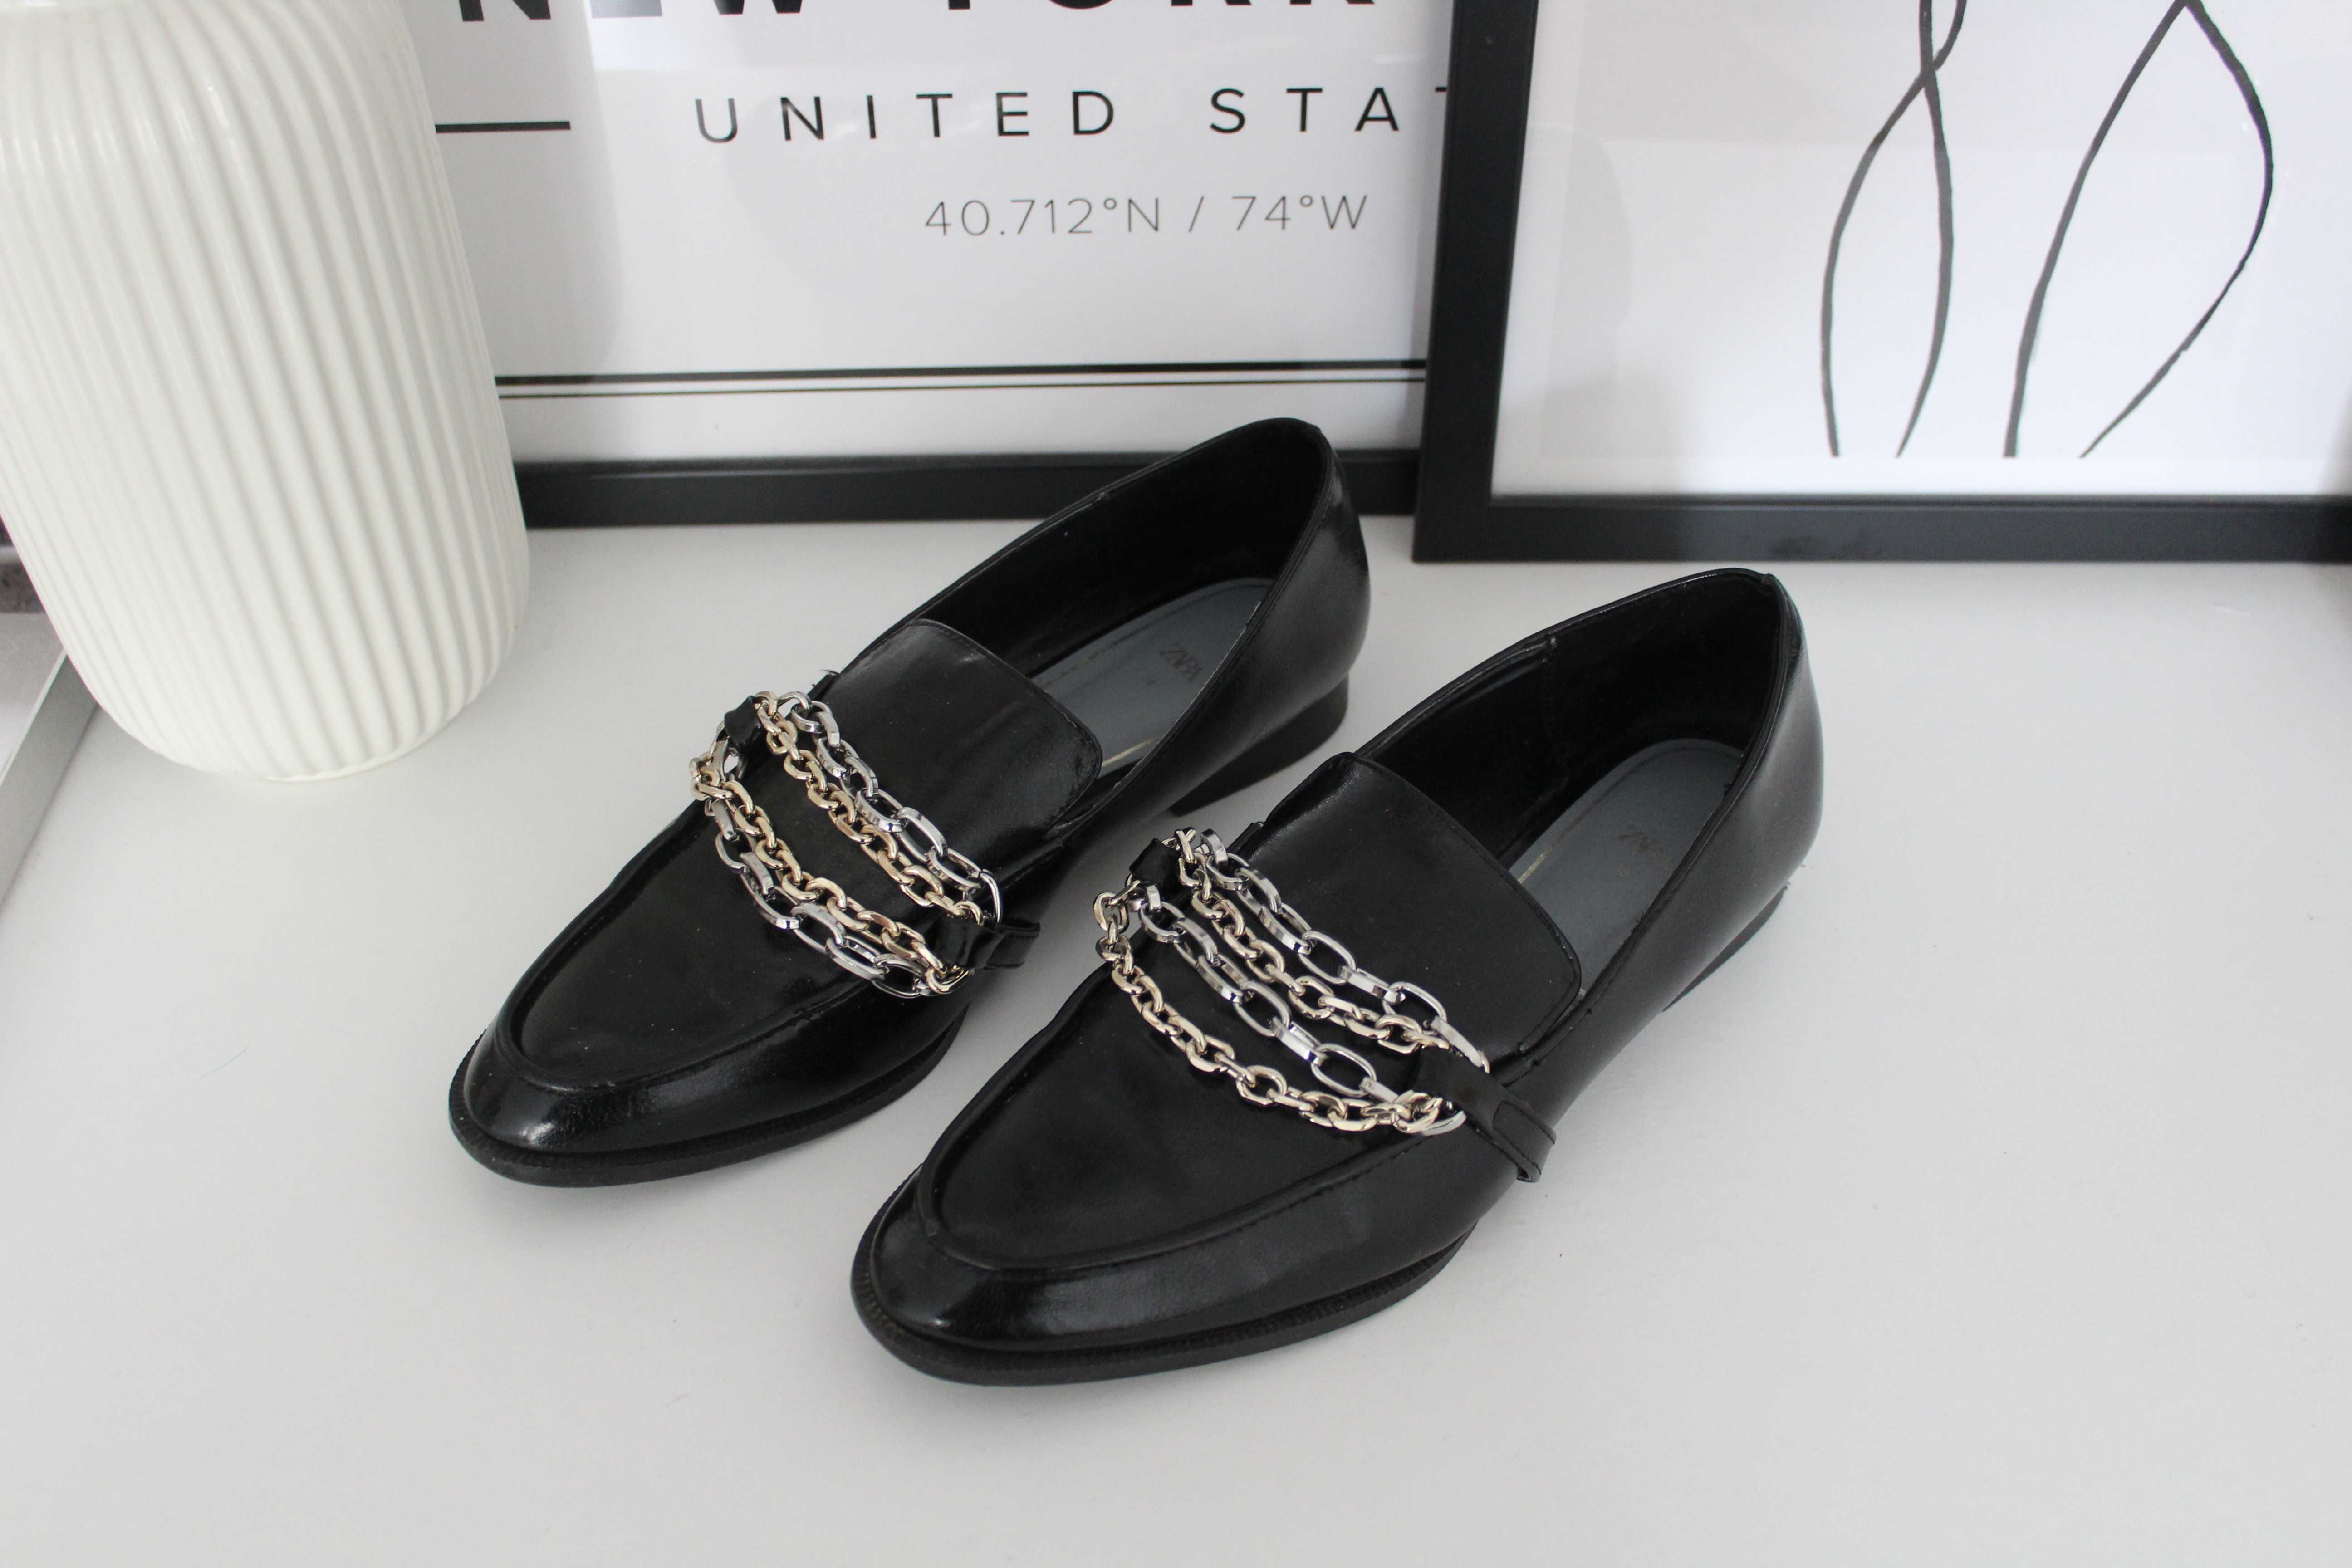 ZARA mokasyny czarne lakierowane buty płaskie loafers